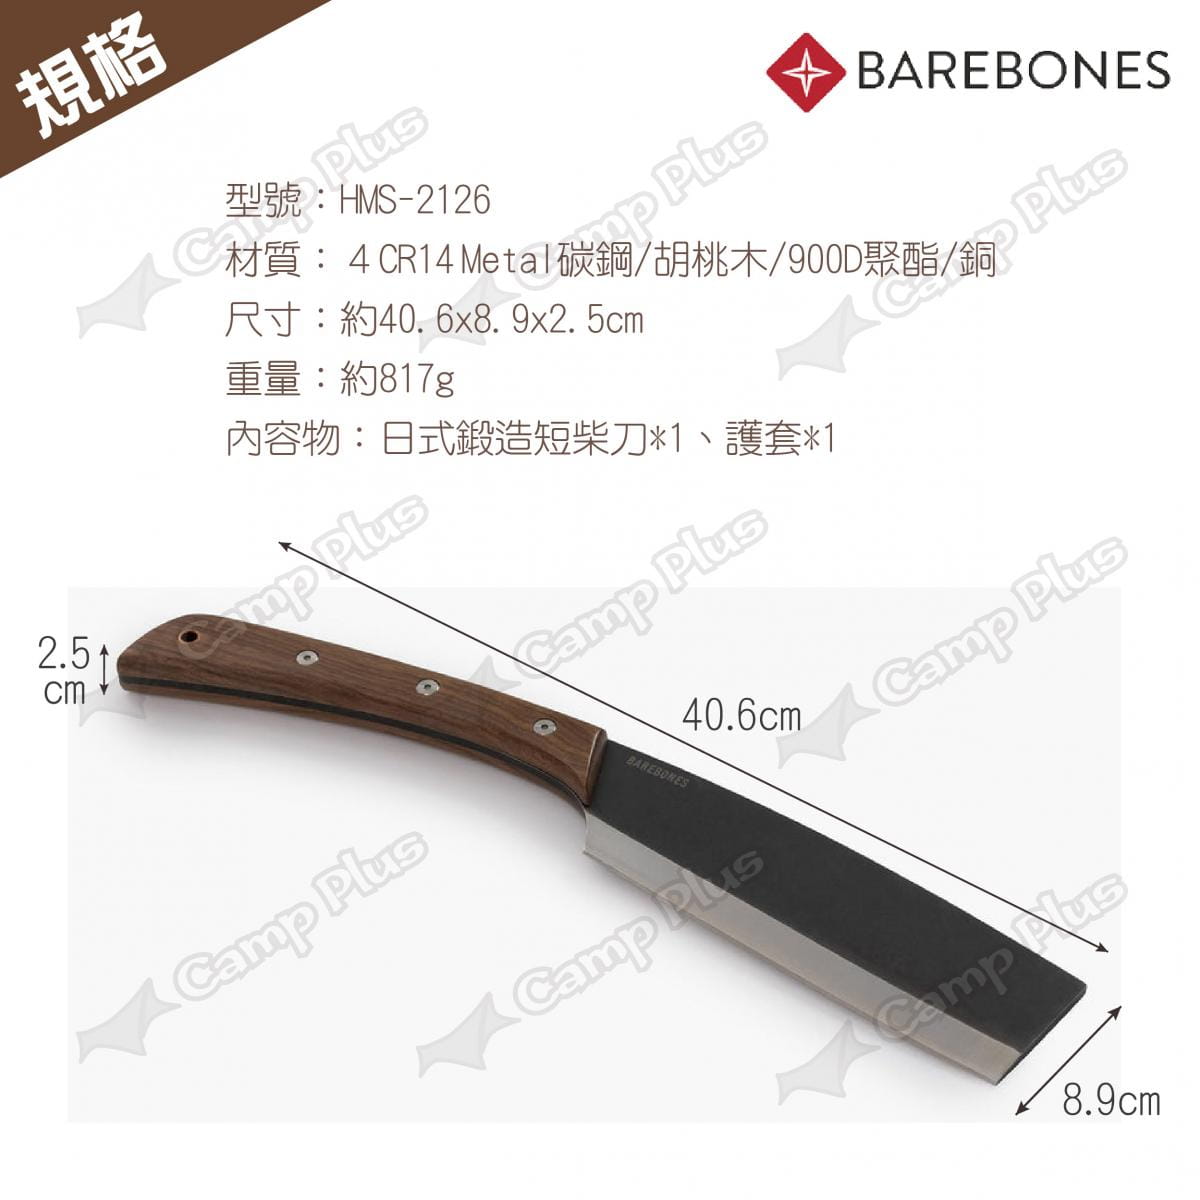 【Barebones】日式鍛造短柴刀_HMS-2126 (悠遊戶外) 7